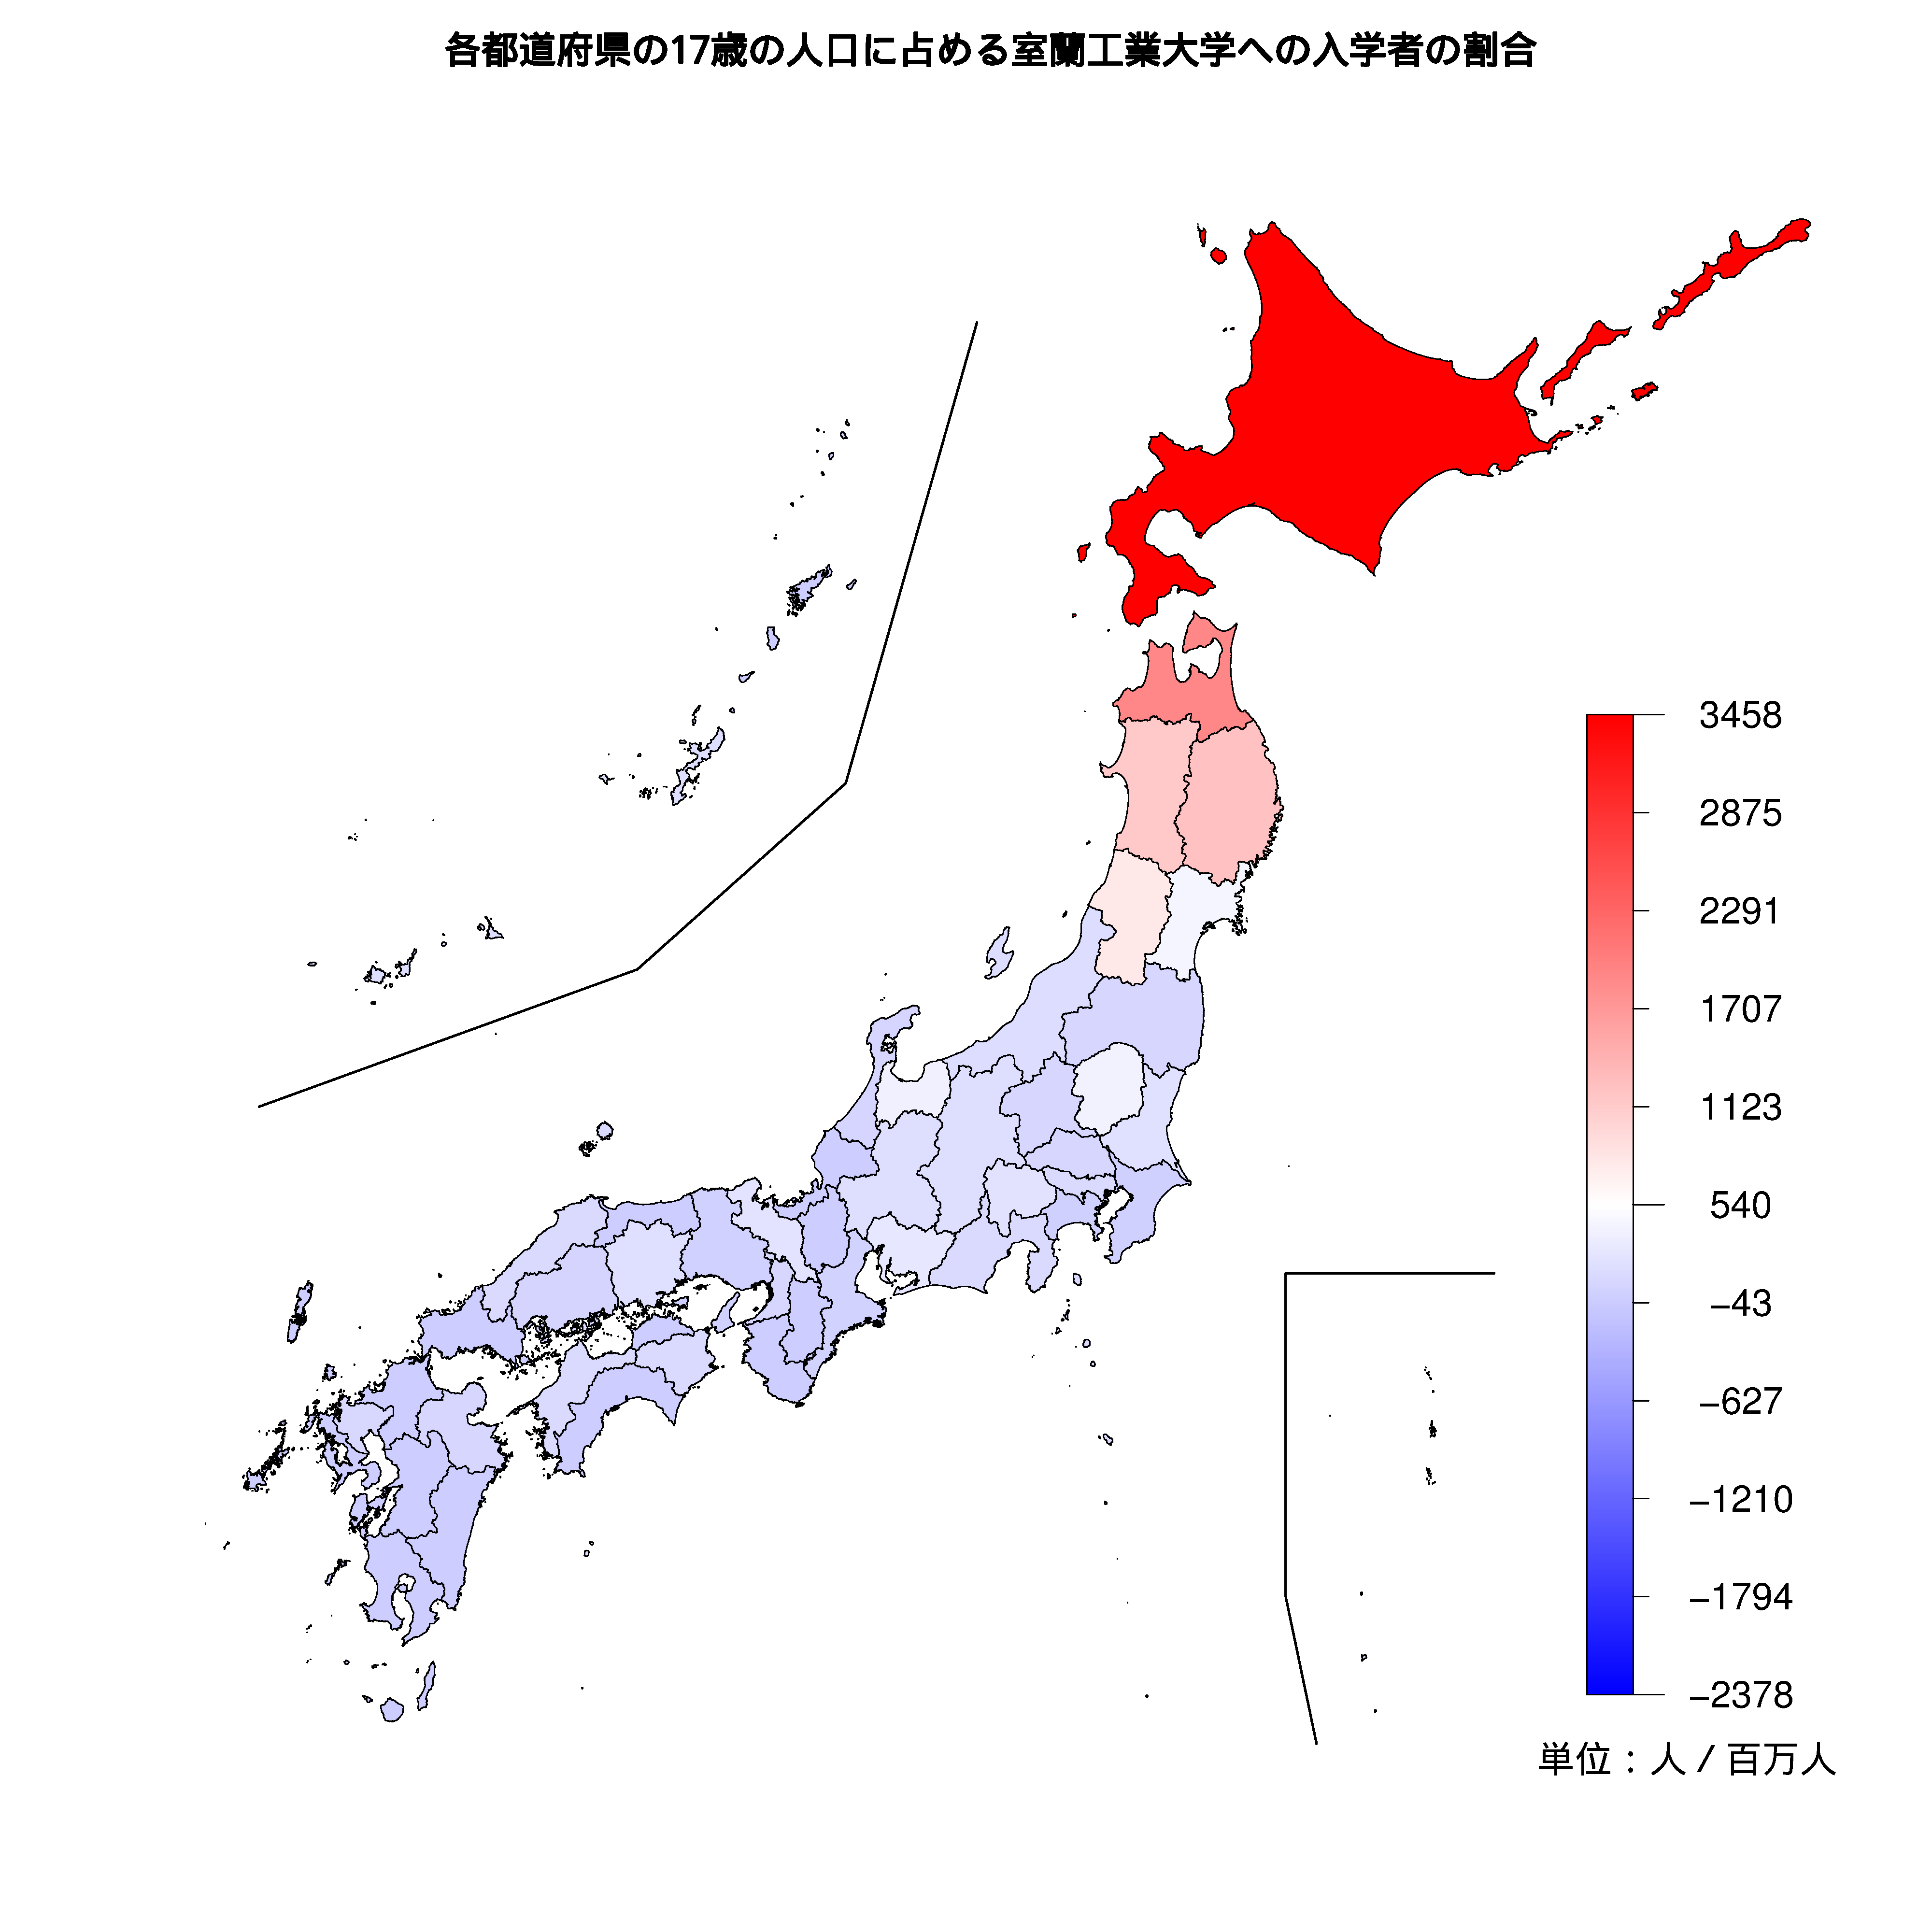 室蘭工業大学への入学者が多い都道府県の色分け地図